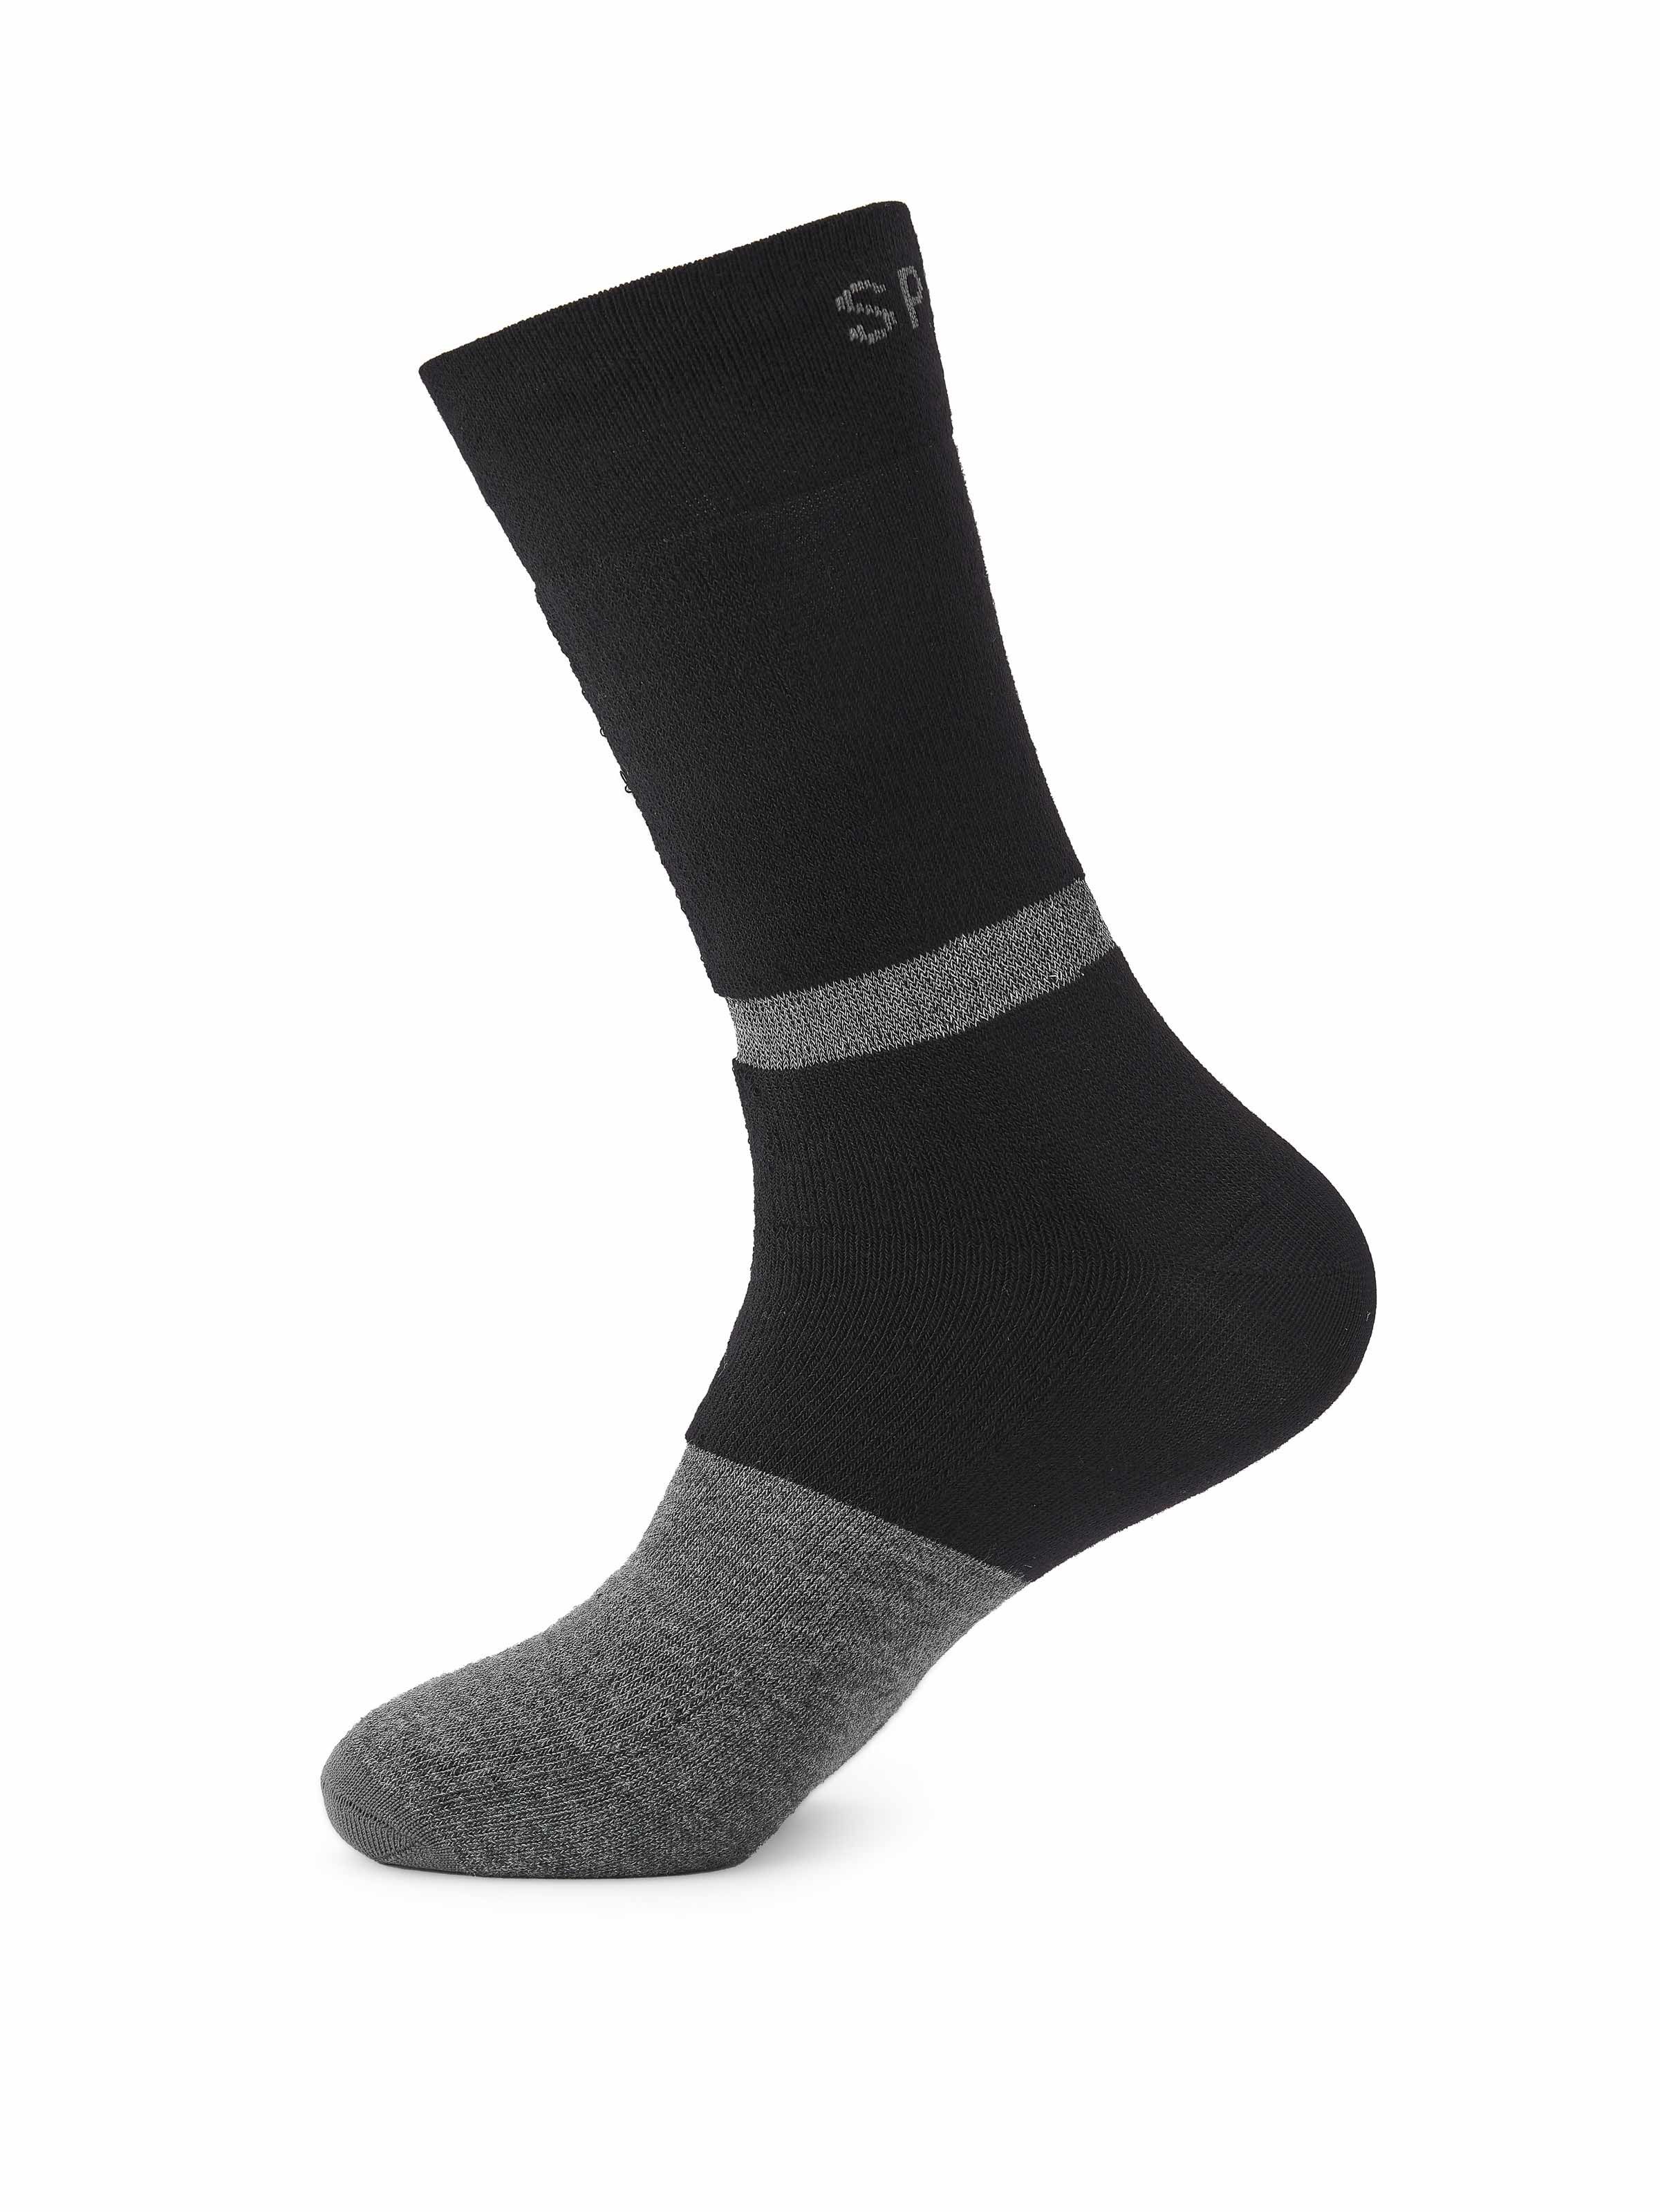 Шкарпетки Spiuk Top Ten winter чорні р 40-43 фото 